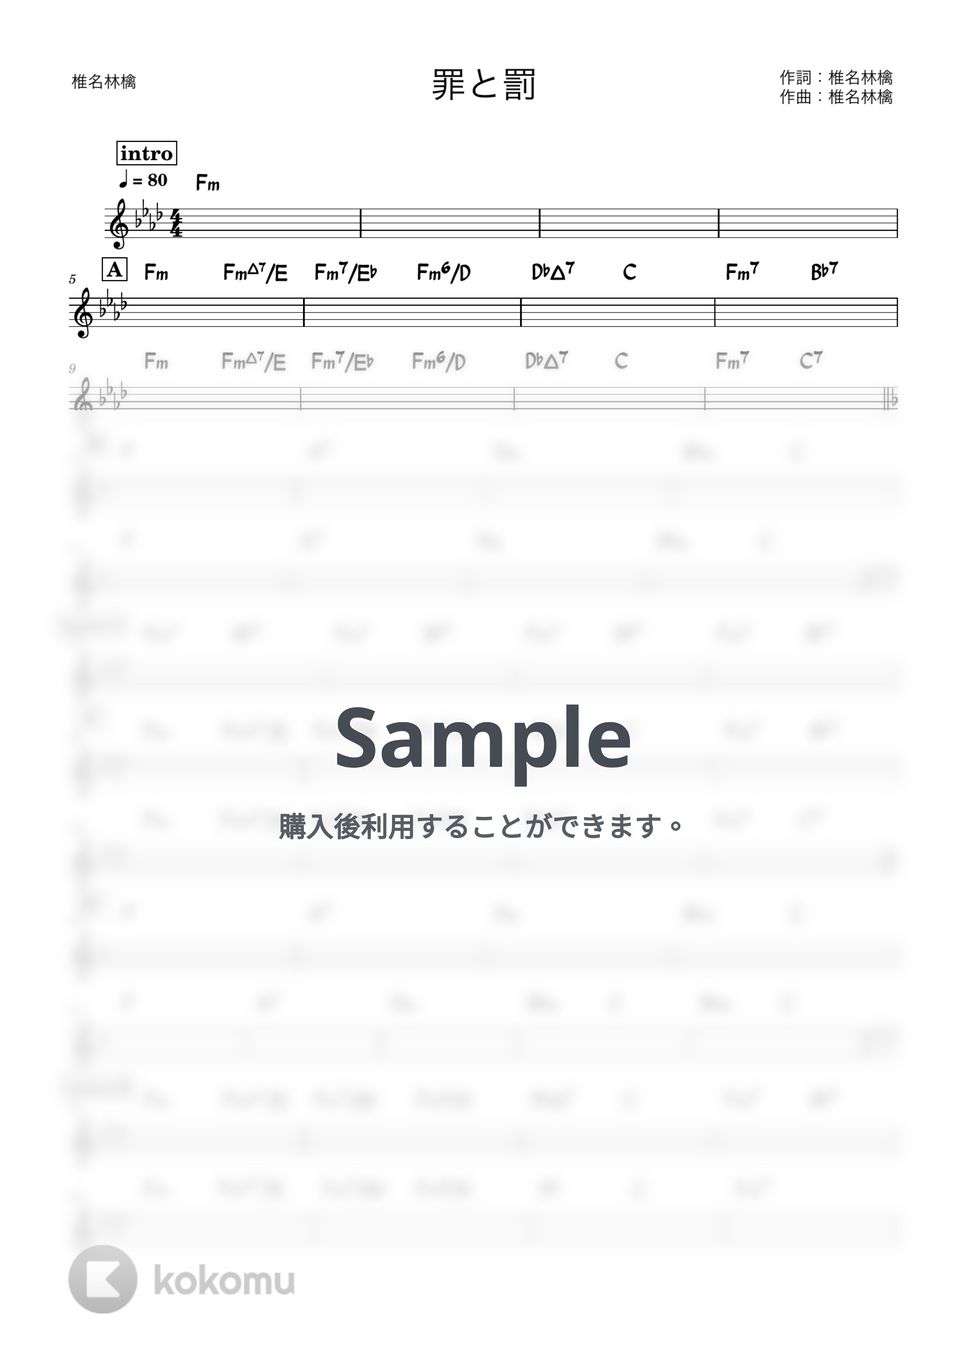 椎名林檎 - 罪と罰 (バンド用コード譜) by 箱譜屋